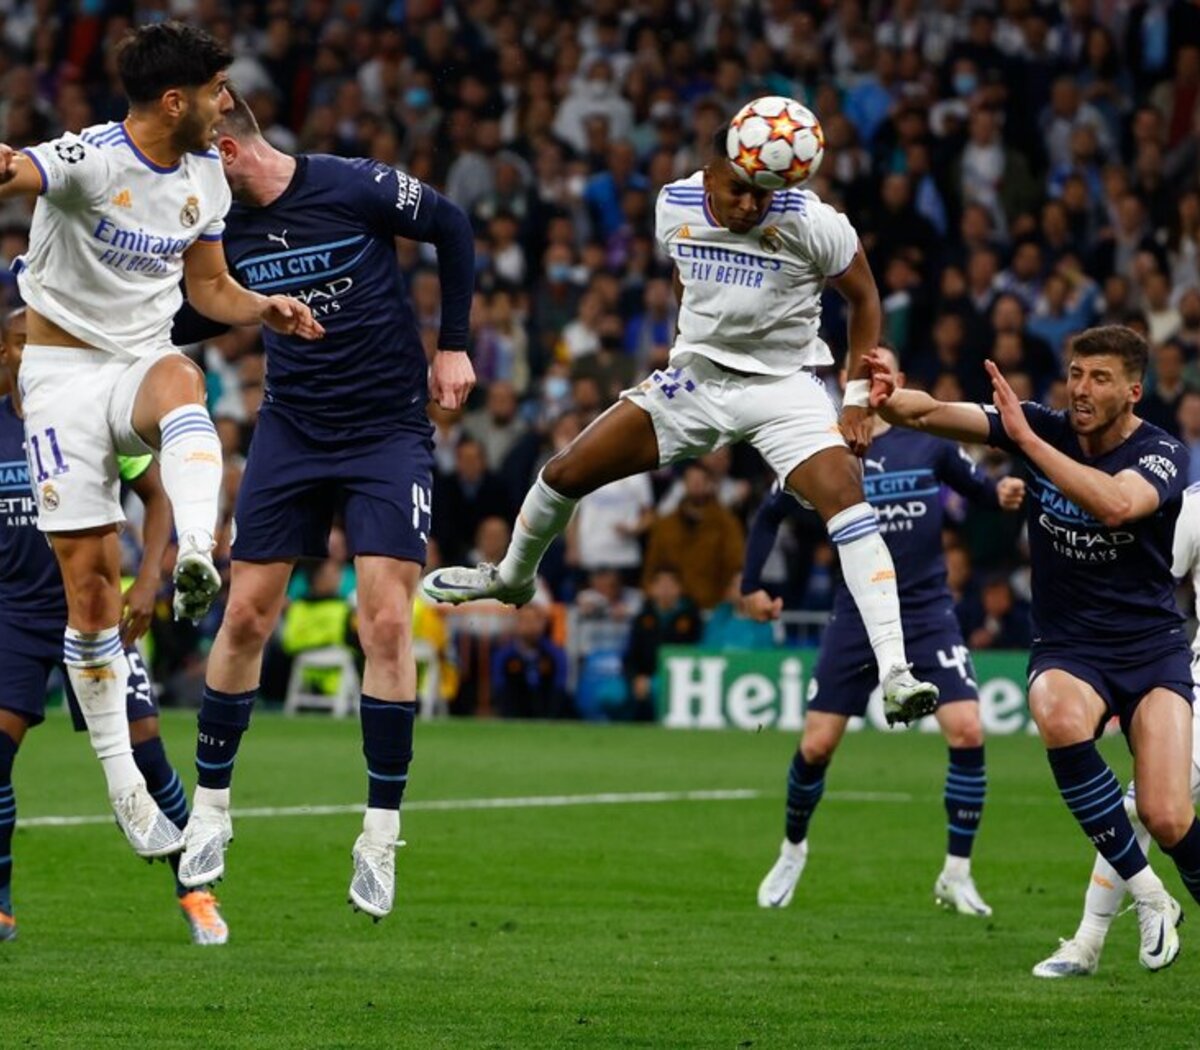 Real Madrid - Manchester City, las semifinales de Champions en